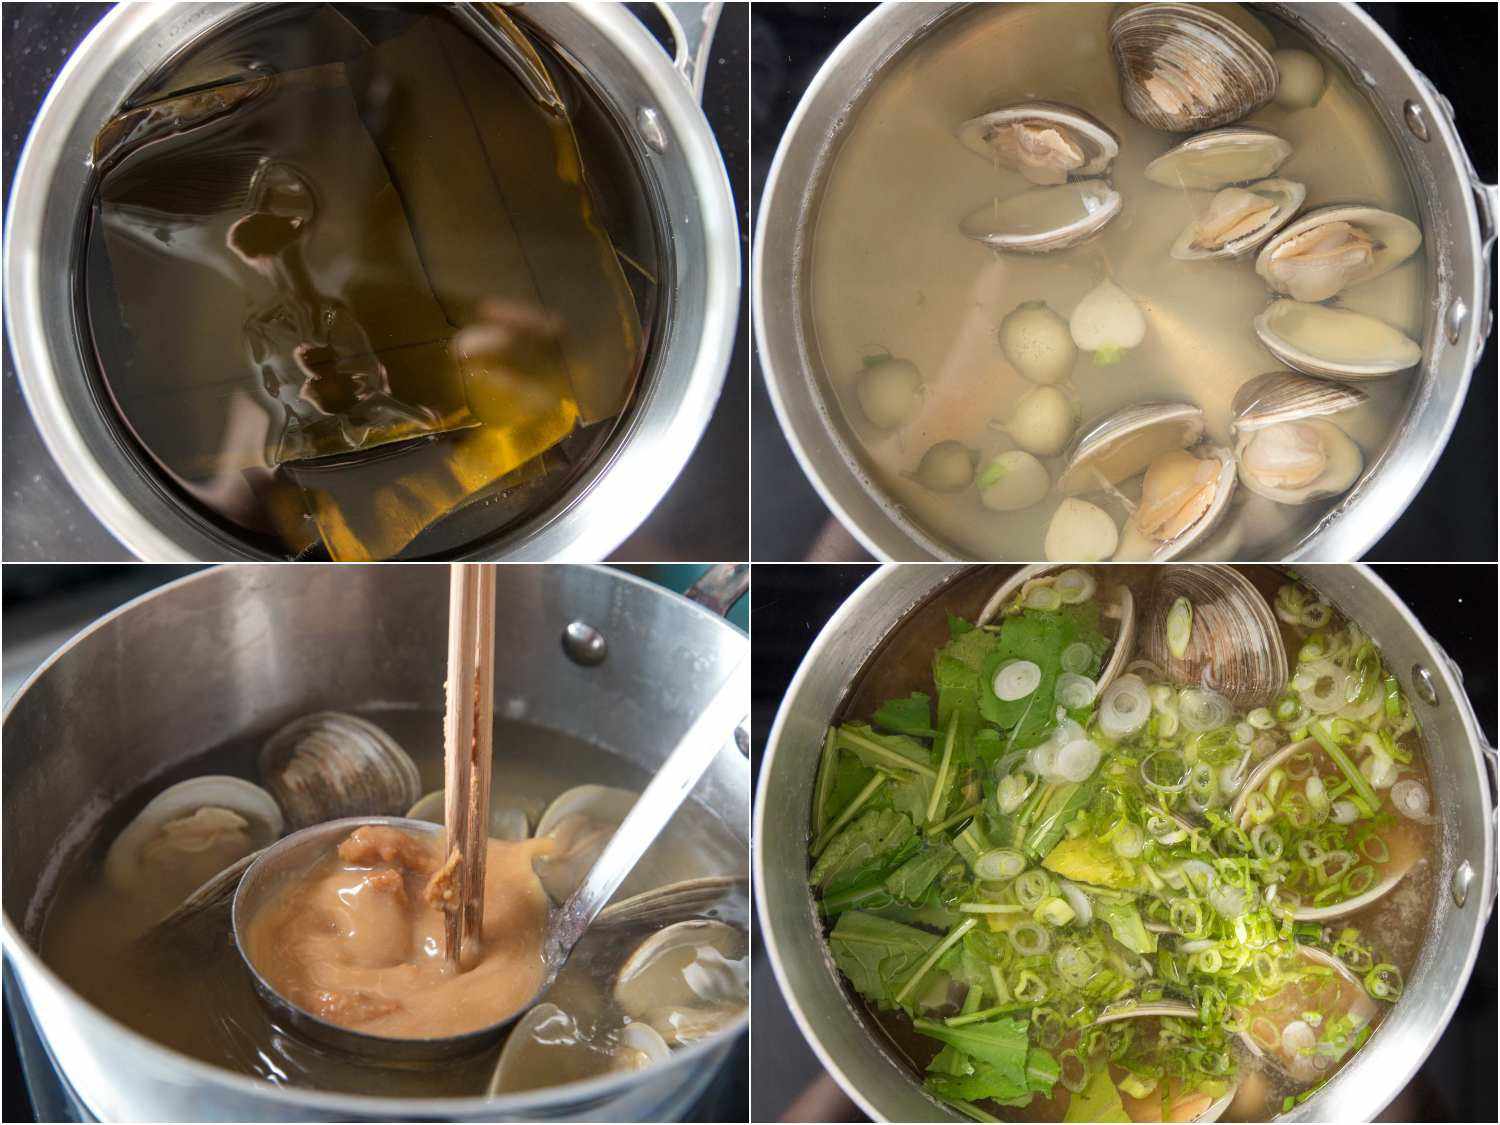 蛤蜊味噌汤的制作步骤:海带泡水，在鱼汤中加入蛤蜊和对半切开的萝卜，将味噌混合到鱼汤中，加入葱花和青菜